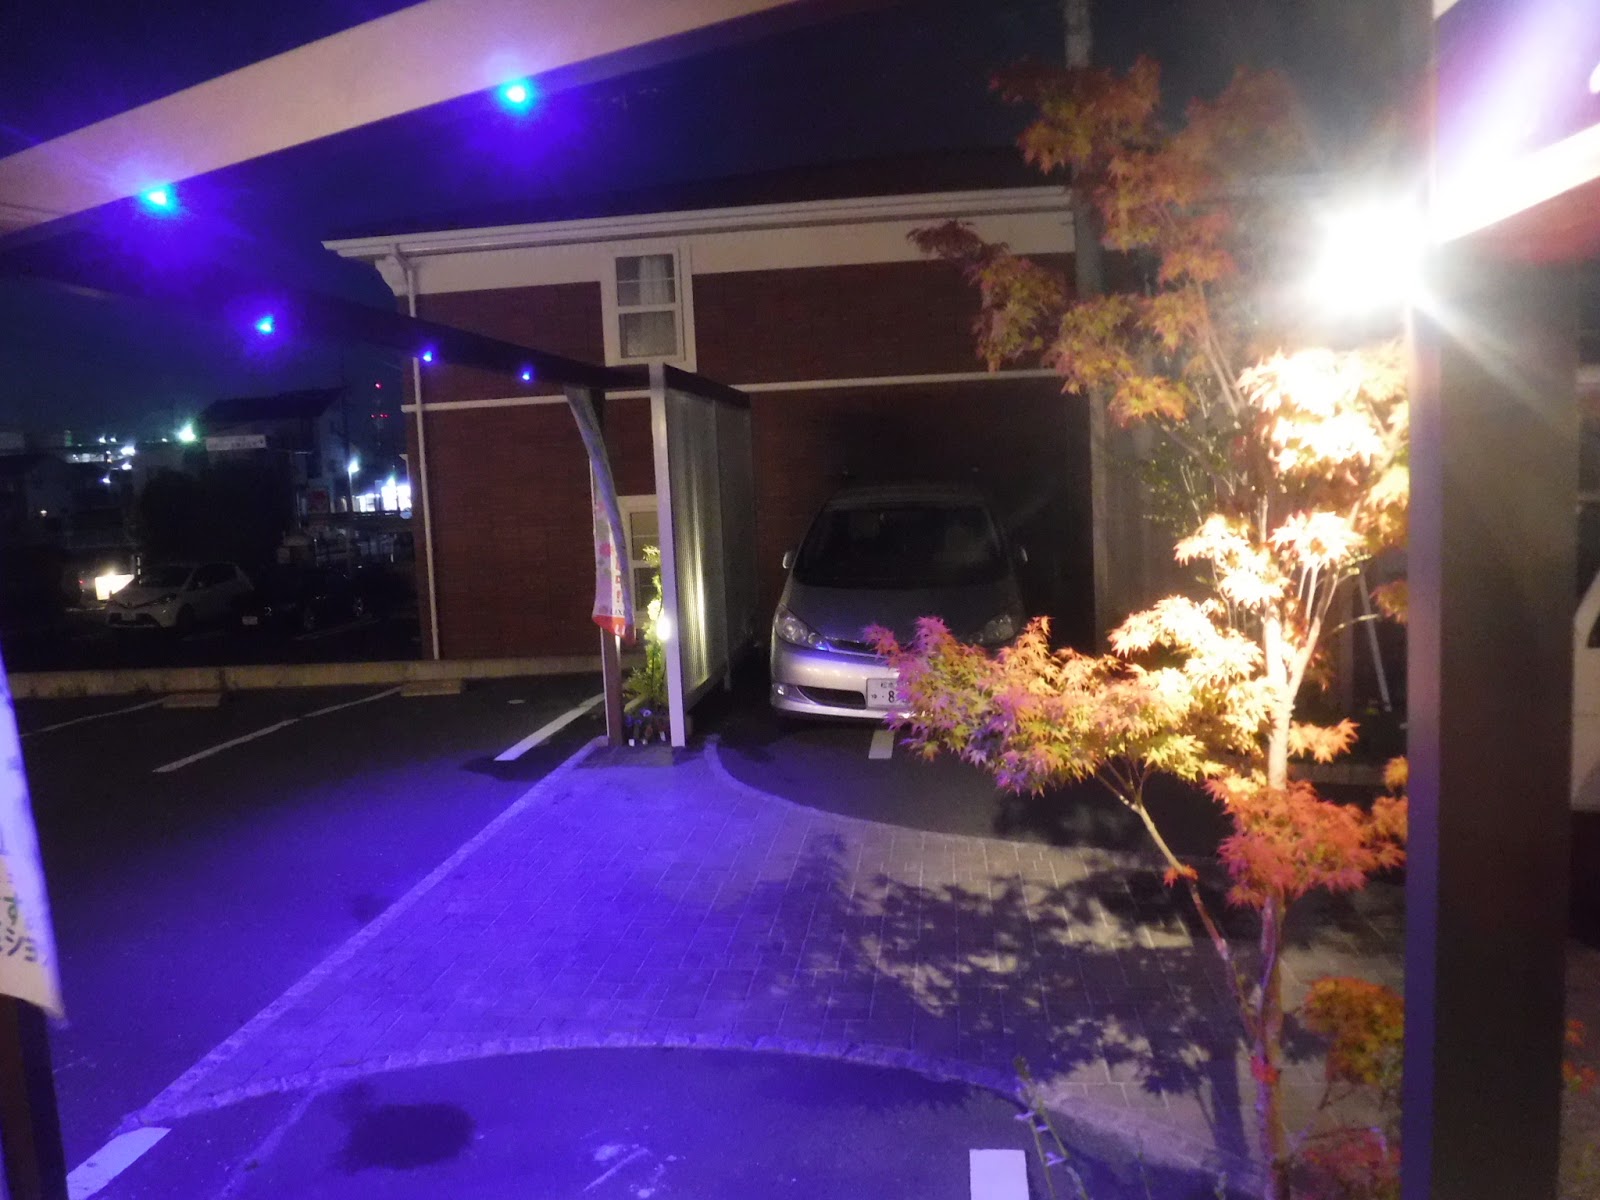 マイホームにおしゃれな駐車場を作ろう 照明付きで夜もおしゃれな雰囲気に 画像あり 松本市のエクステリア外構工事のプレックスガーデン